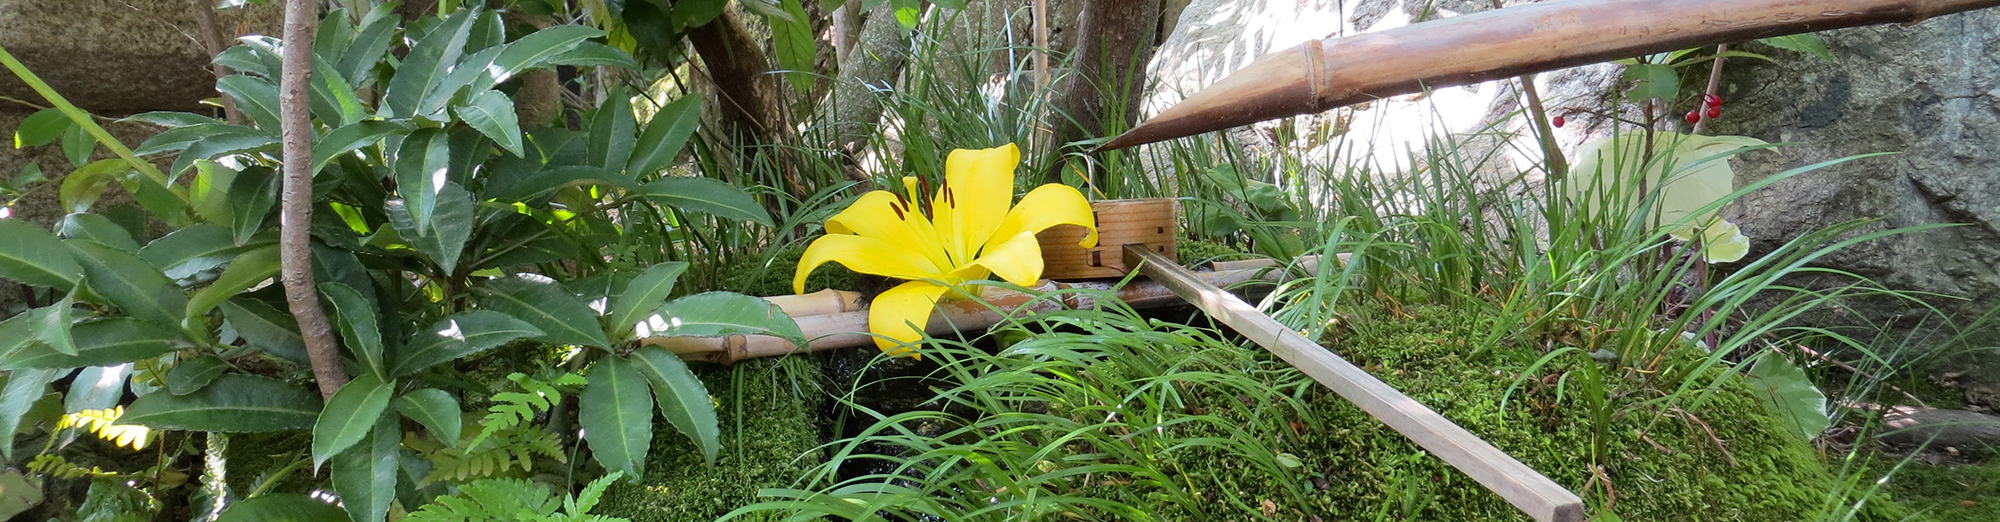 Programme MBSR Atelier découverte zen fontaine japonaise bambou fleur Méditation Mindfulness